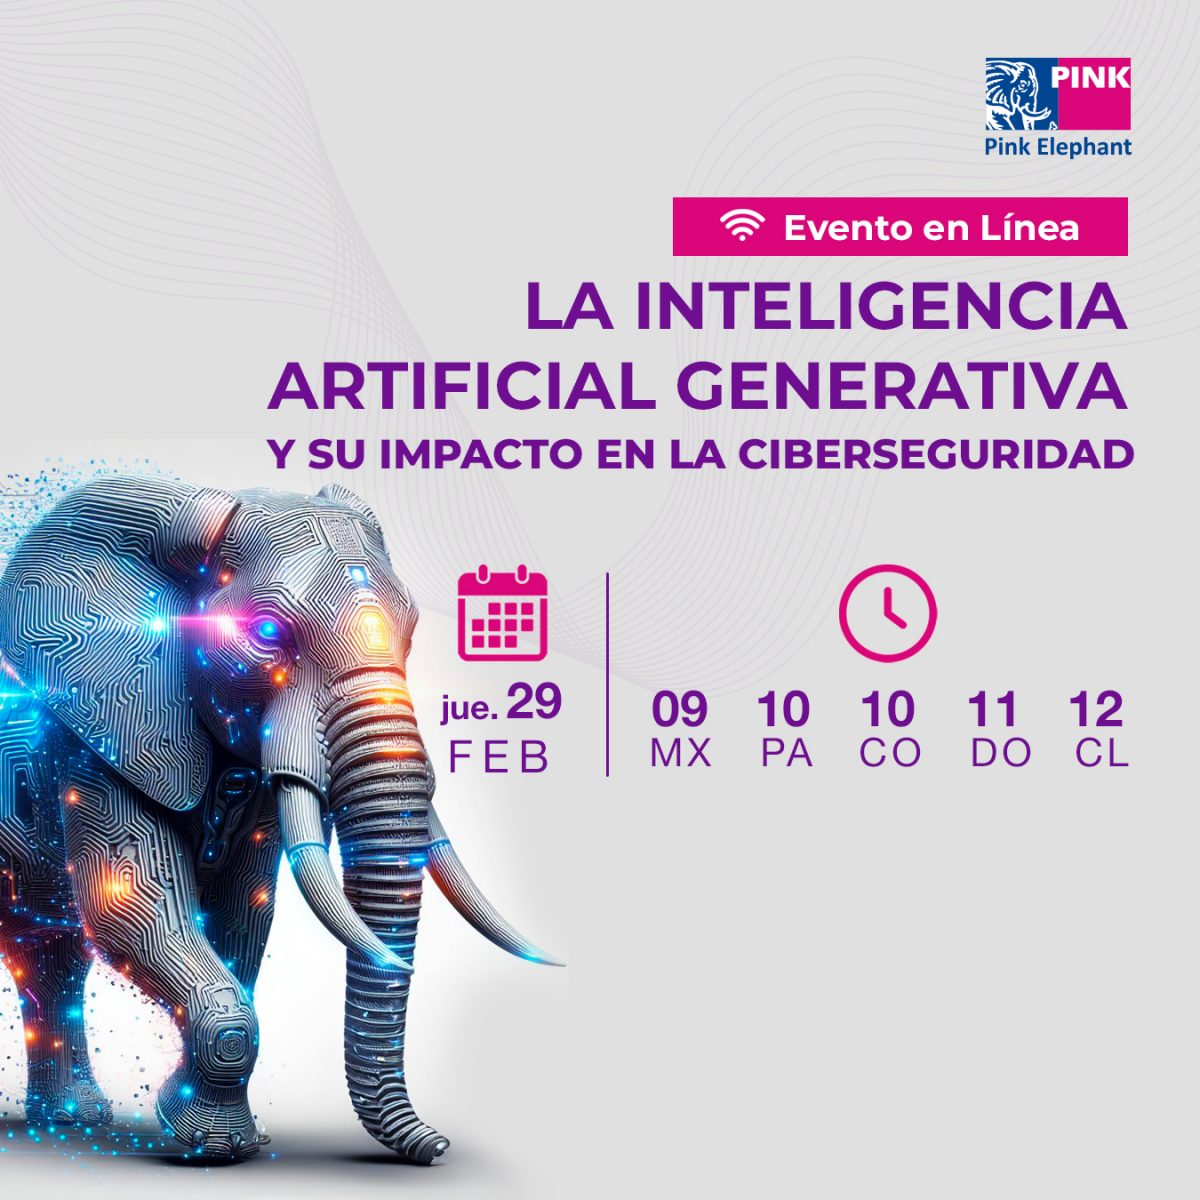 Evento en línea: La Inteligencia Artificial Generativa y su impacto en la Ciberseguridad